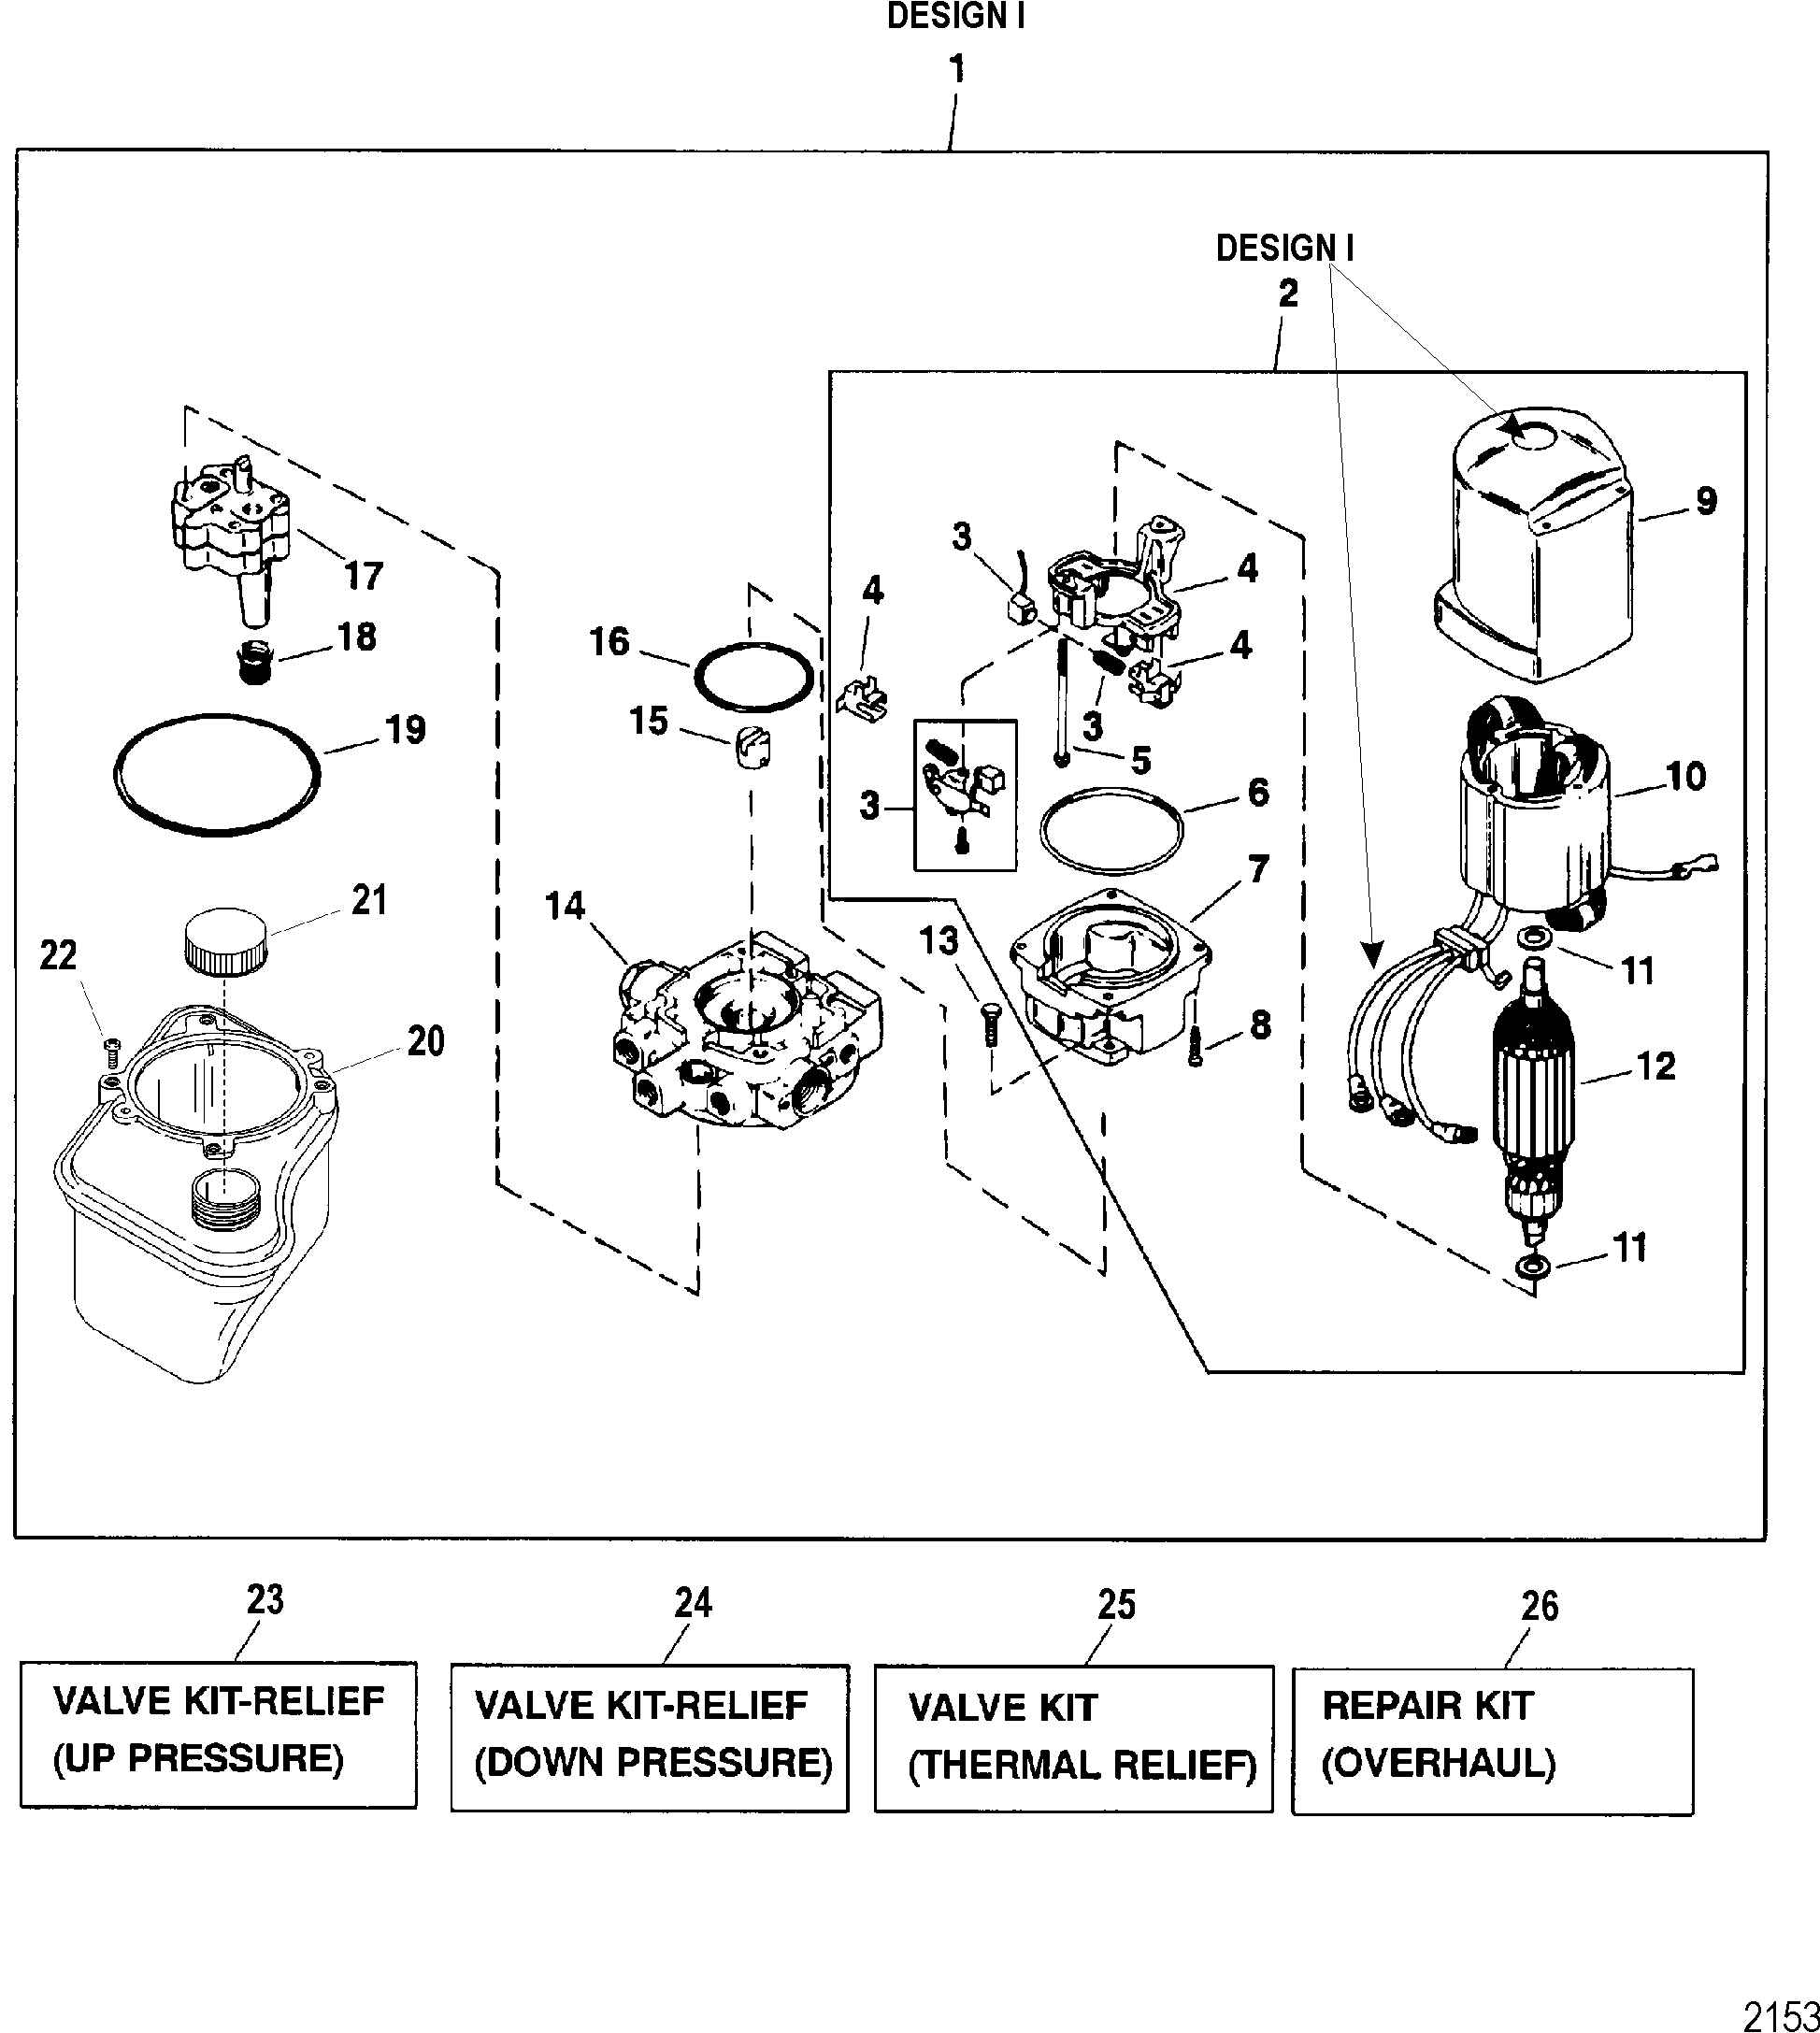 PUMP/MOTOR(TOP MT RESERVOIR) (DESIGN I - 14336A20)